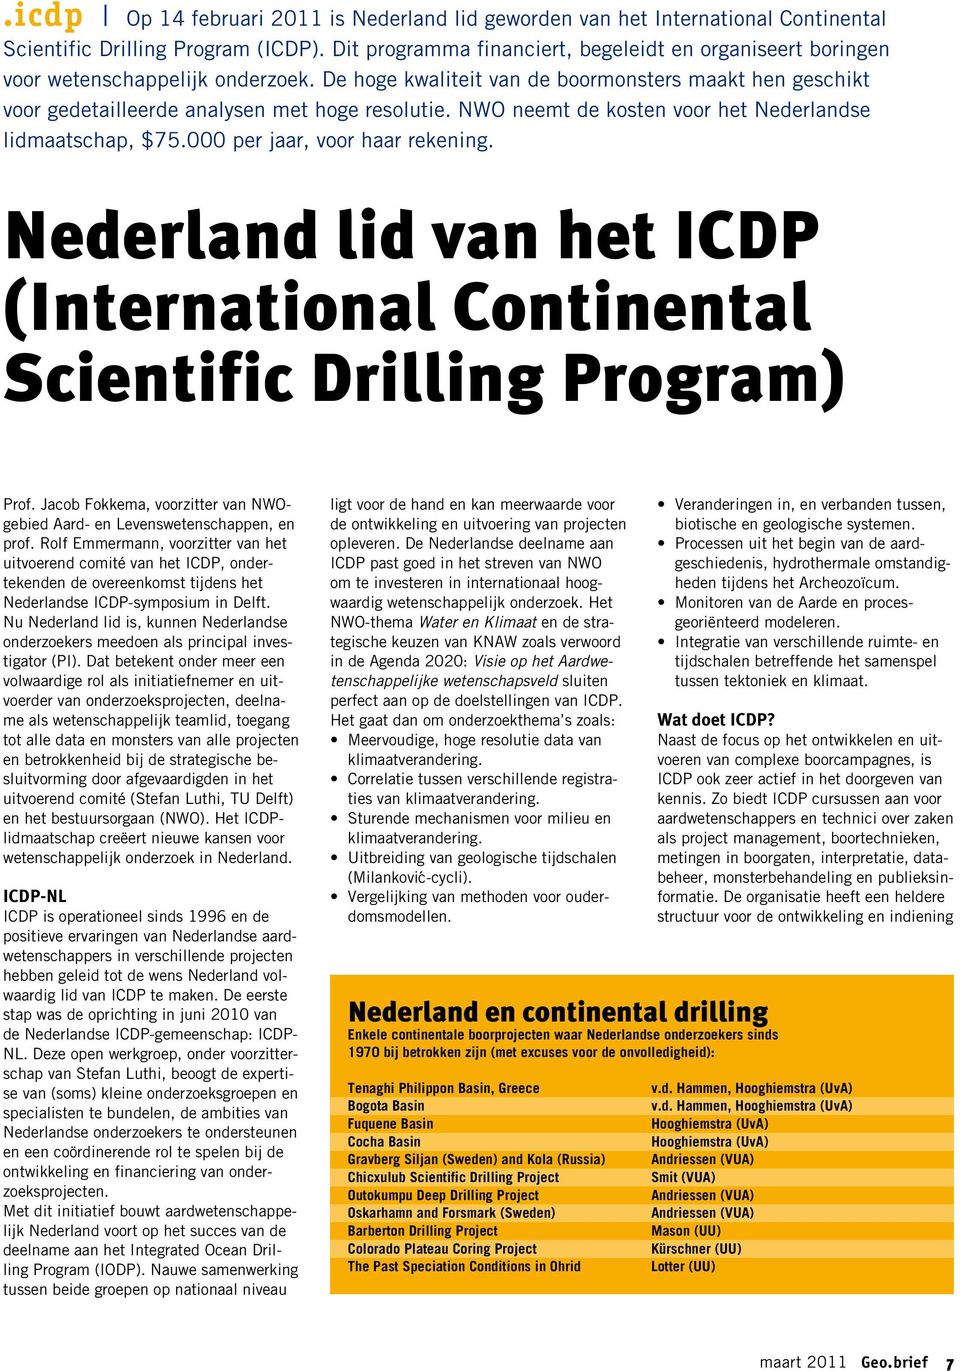 NWO neemt de kosten voor het Nederlandse lidmaatschap, $75.000 per jaar, voor haar rekening. Nederland lid van het ICDP (Inter national Continental Scientific Drilling Program) Prof.